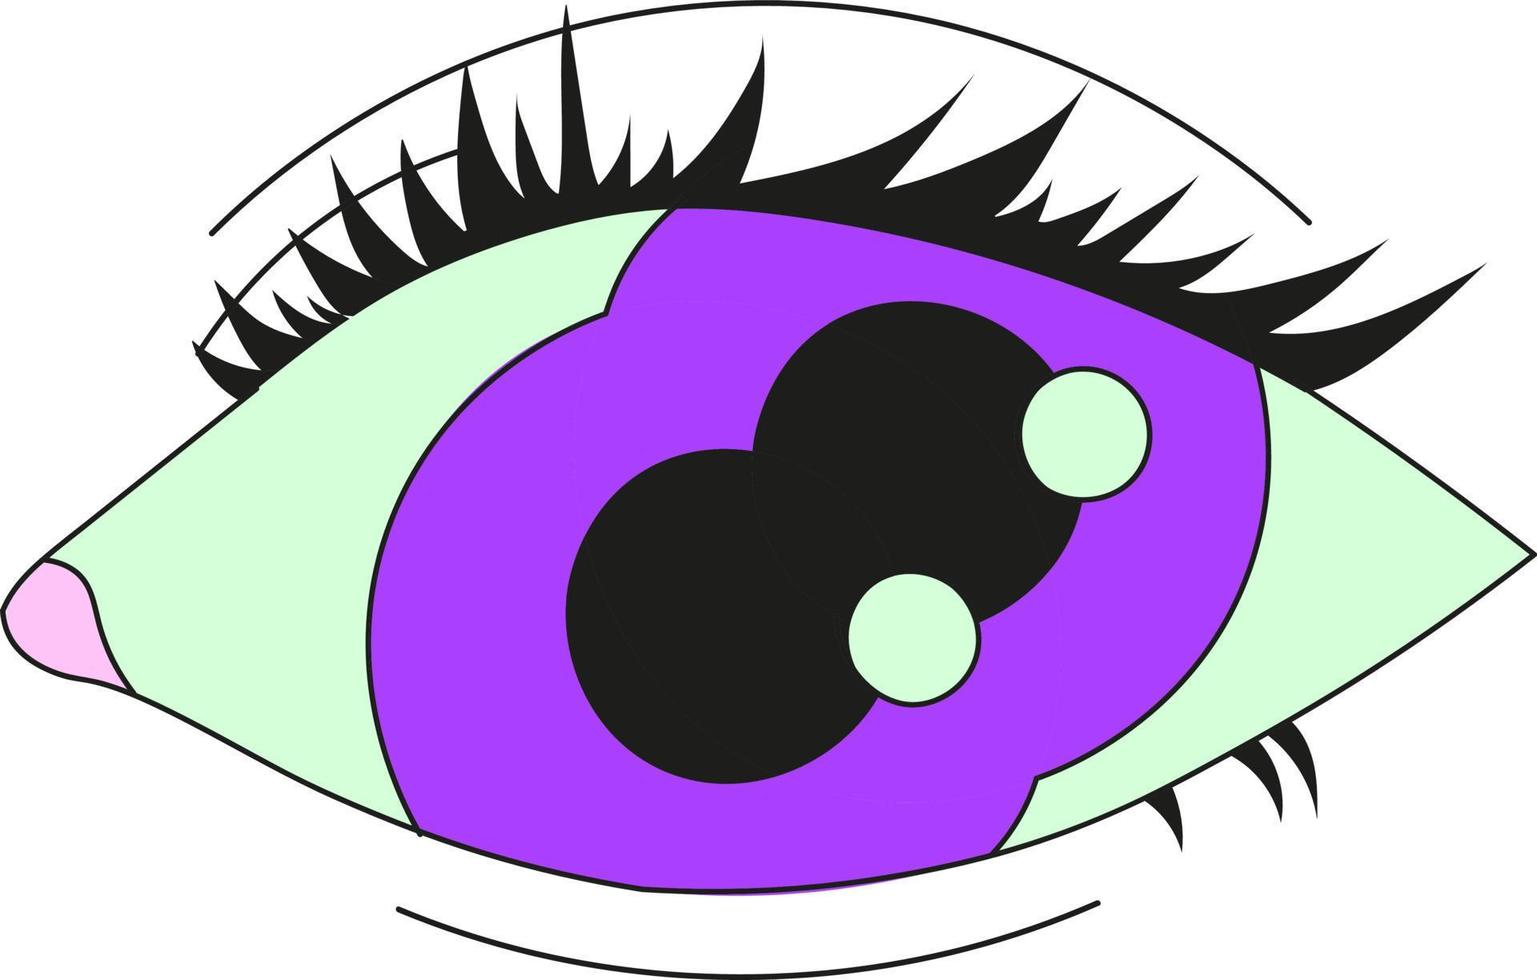 lila psykedeliskt öga med två pupiller. platt vektorillustration isolerad på en vit bakgrund. vektor